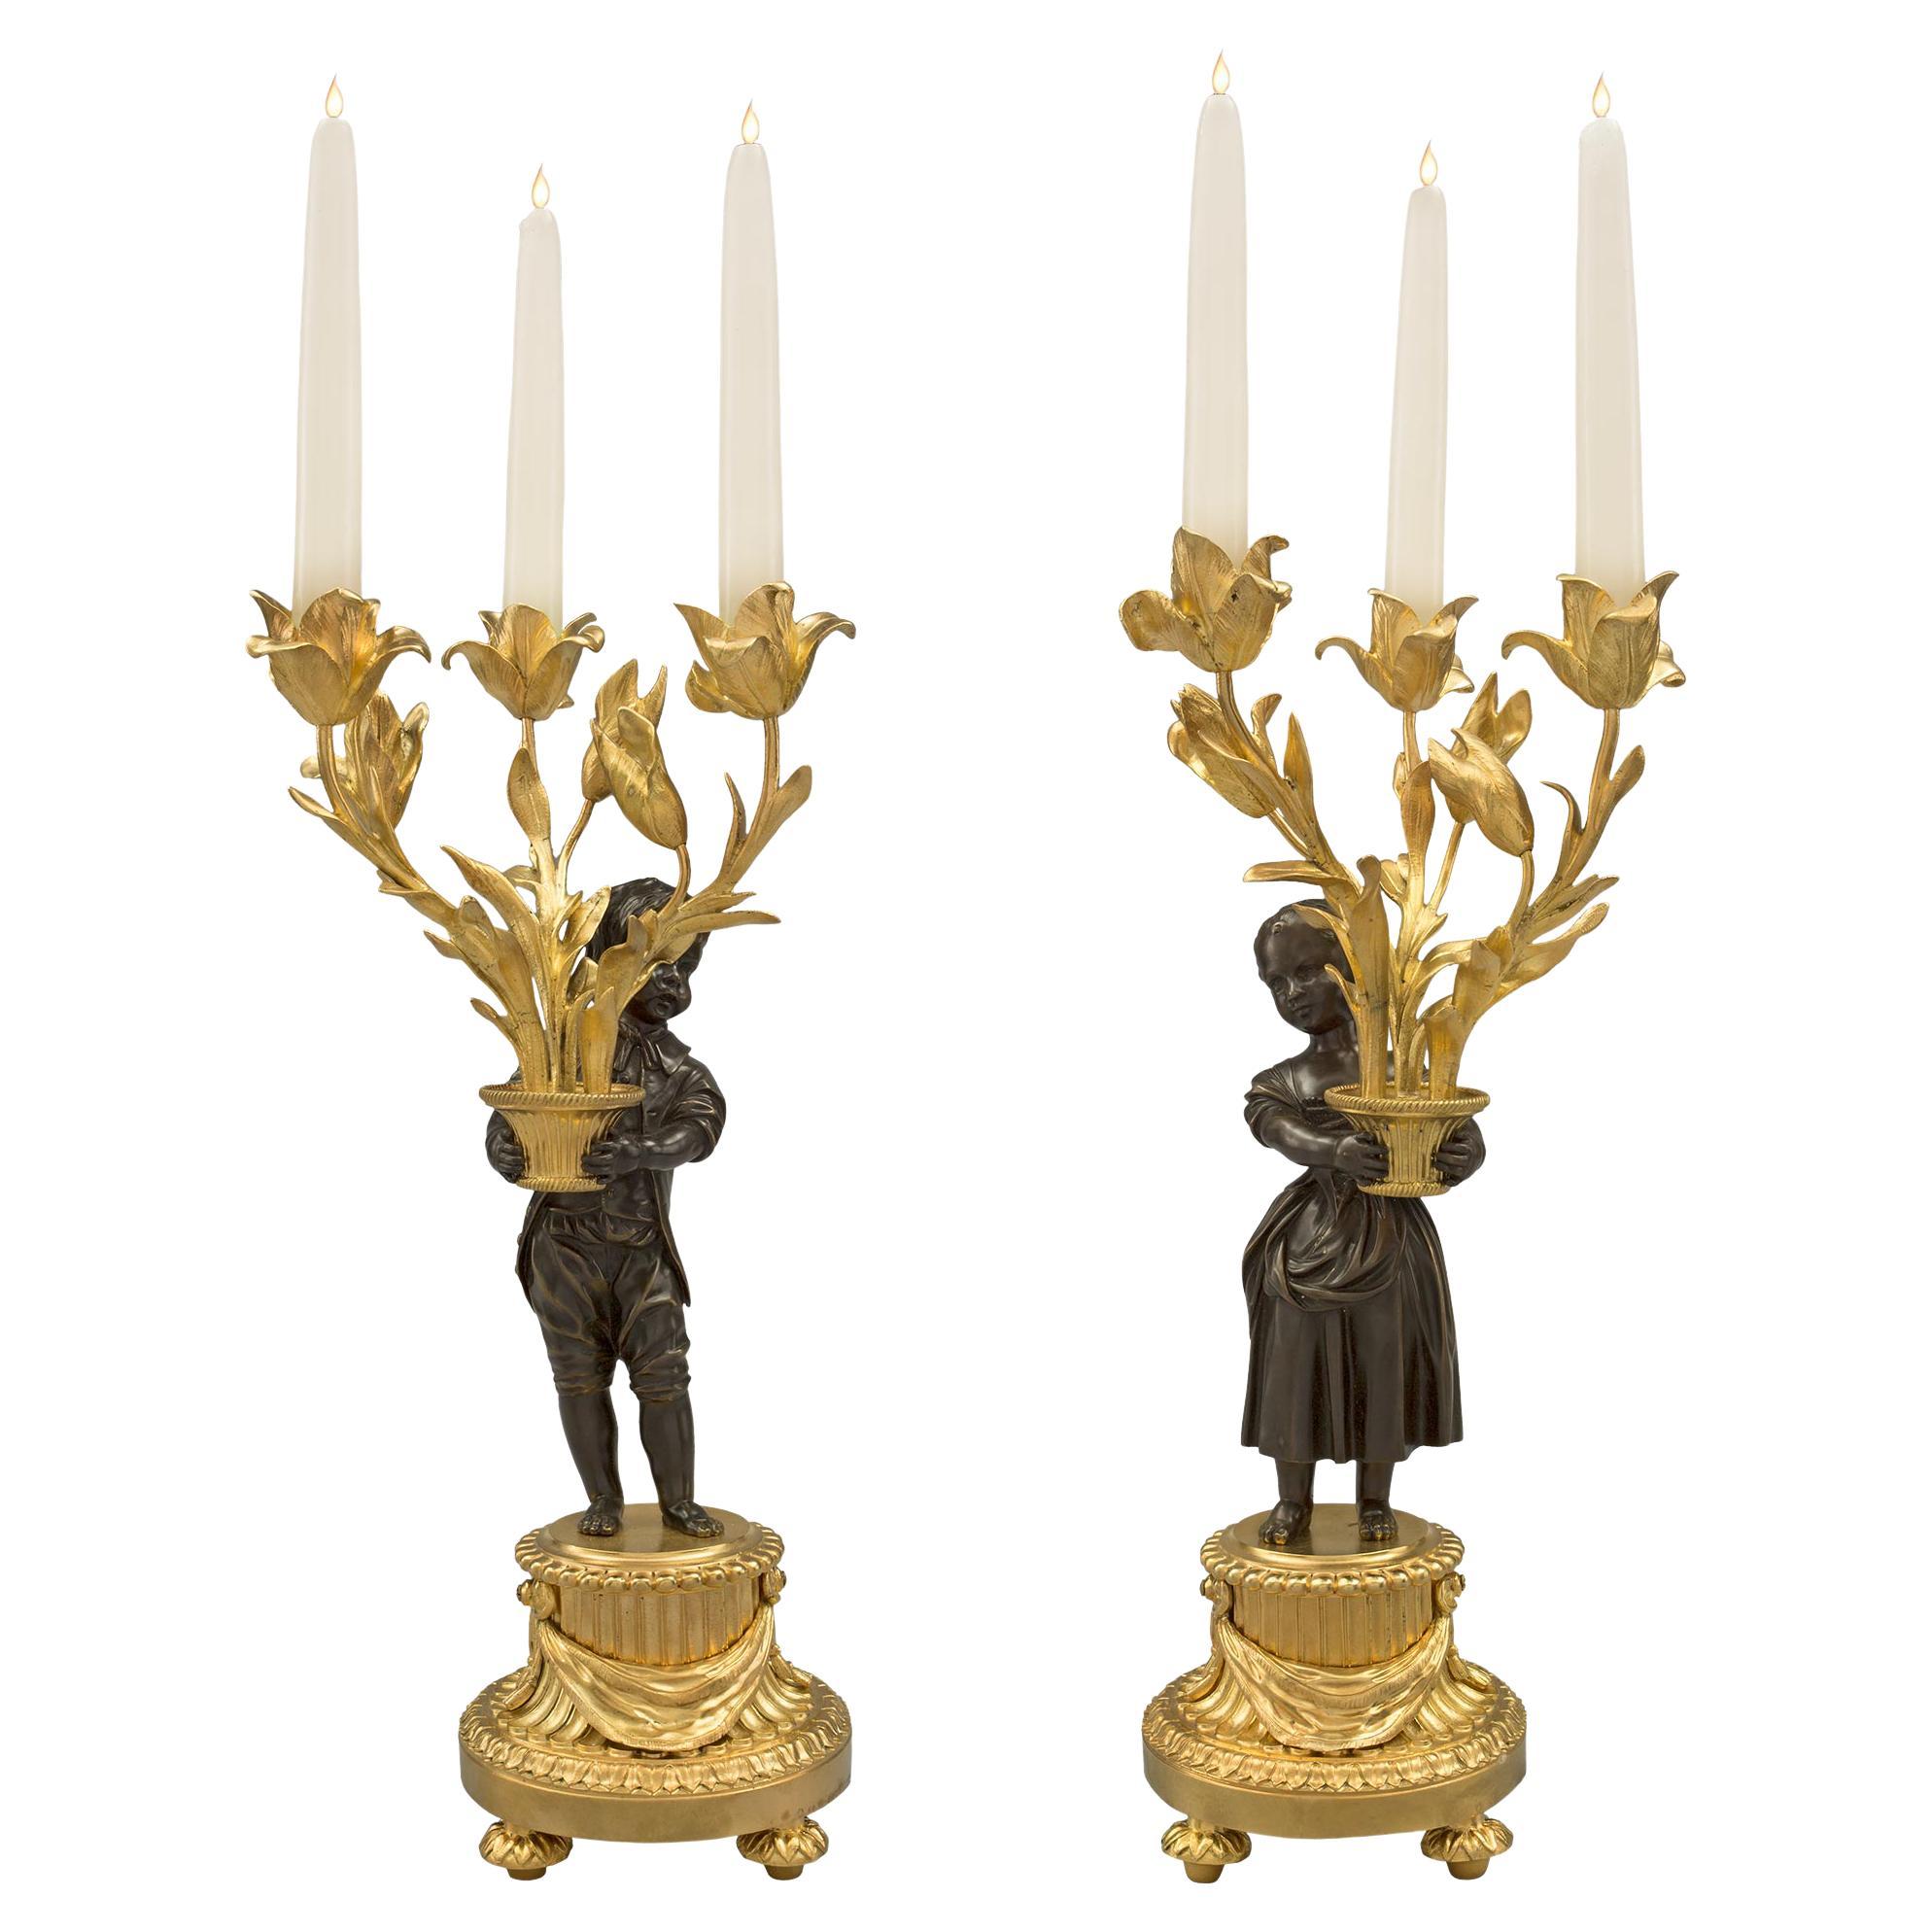 Paire de candélabres à trois bras de style Louis XVI du XIXe siècle français